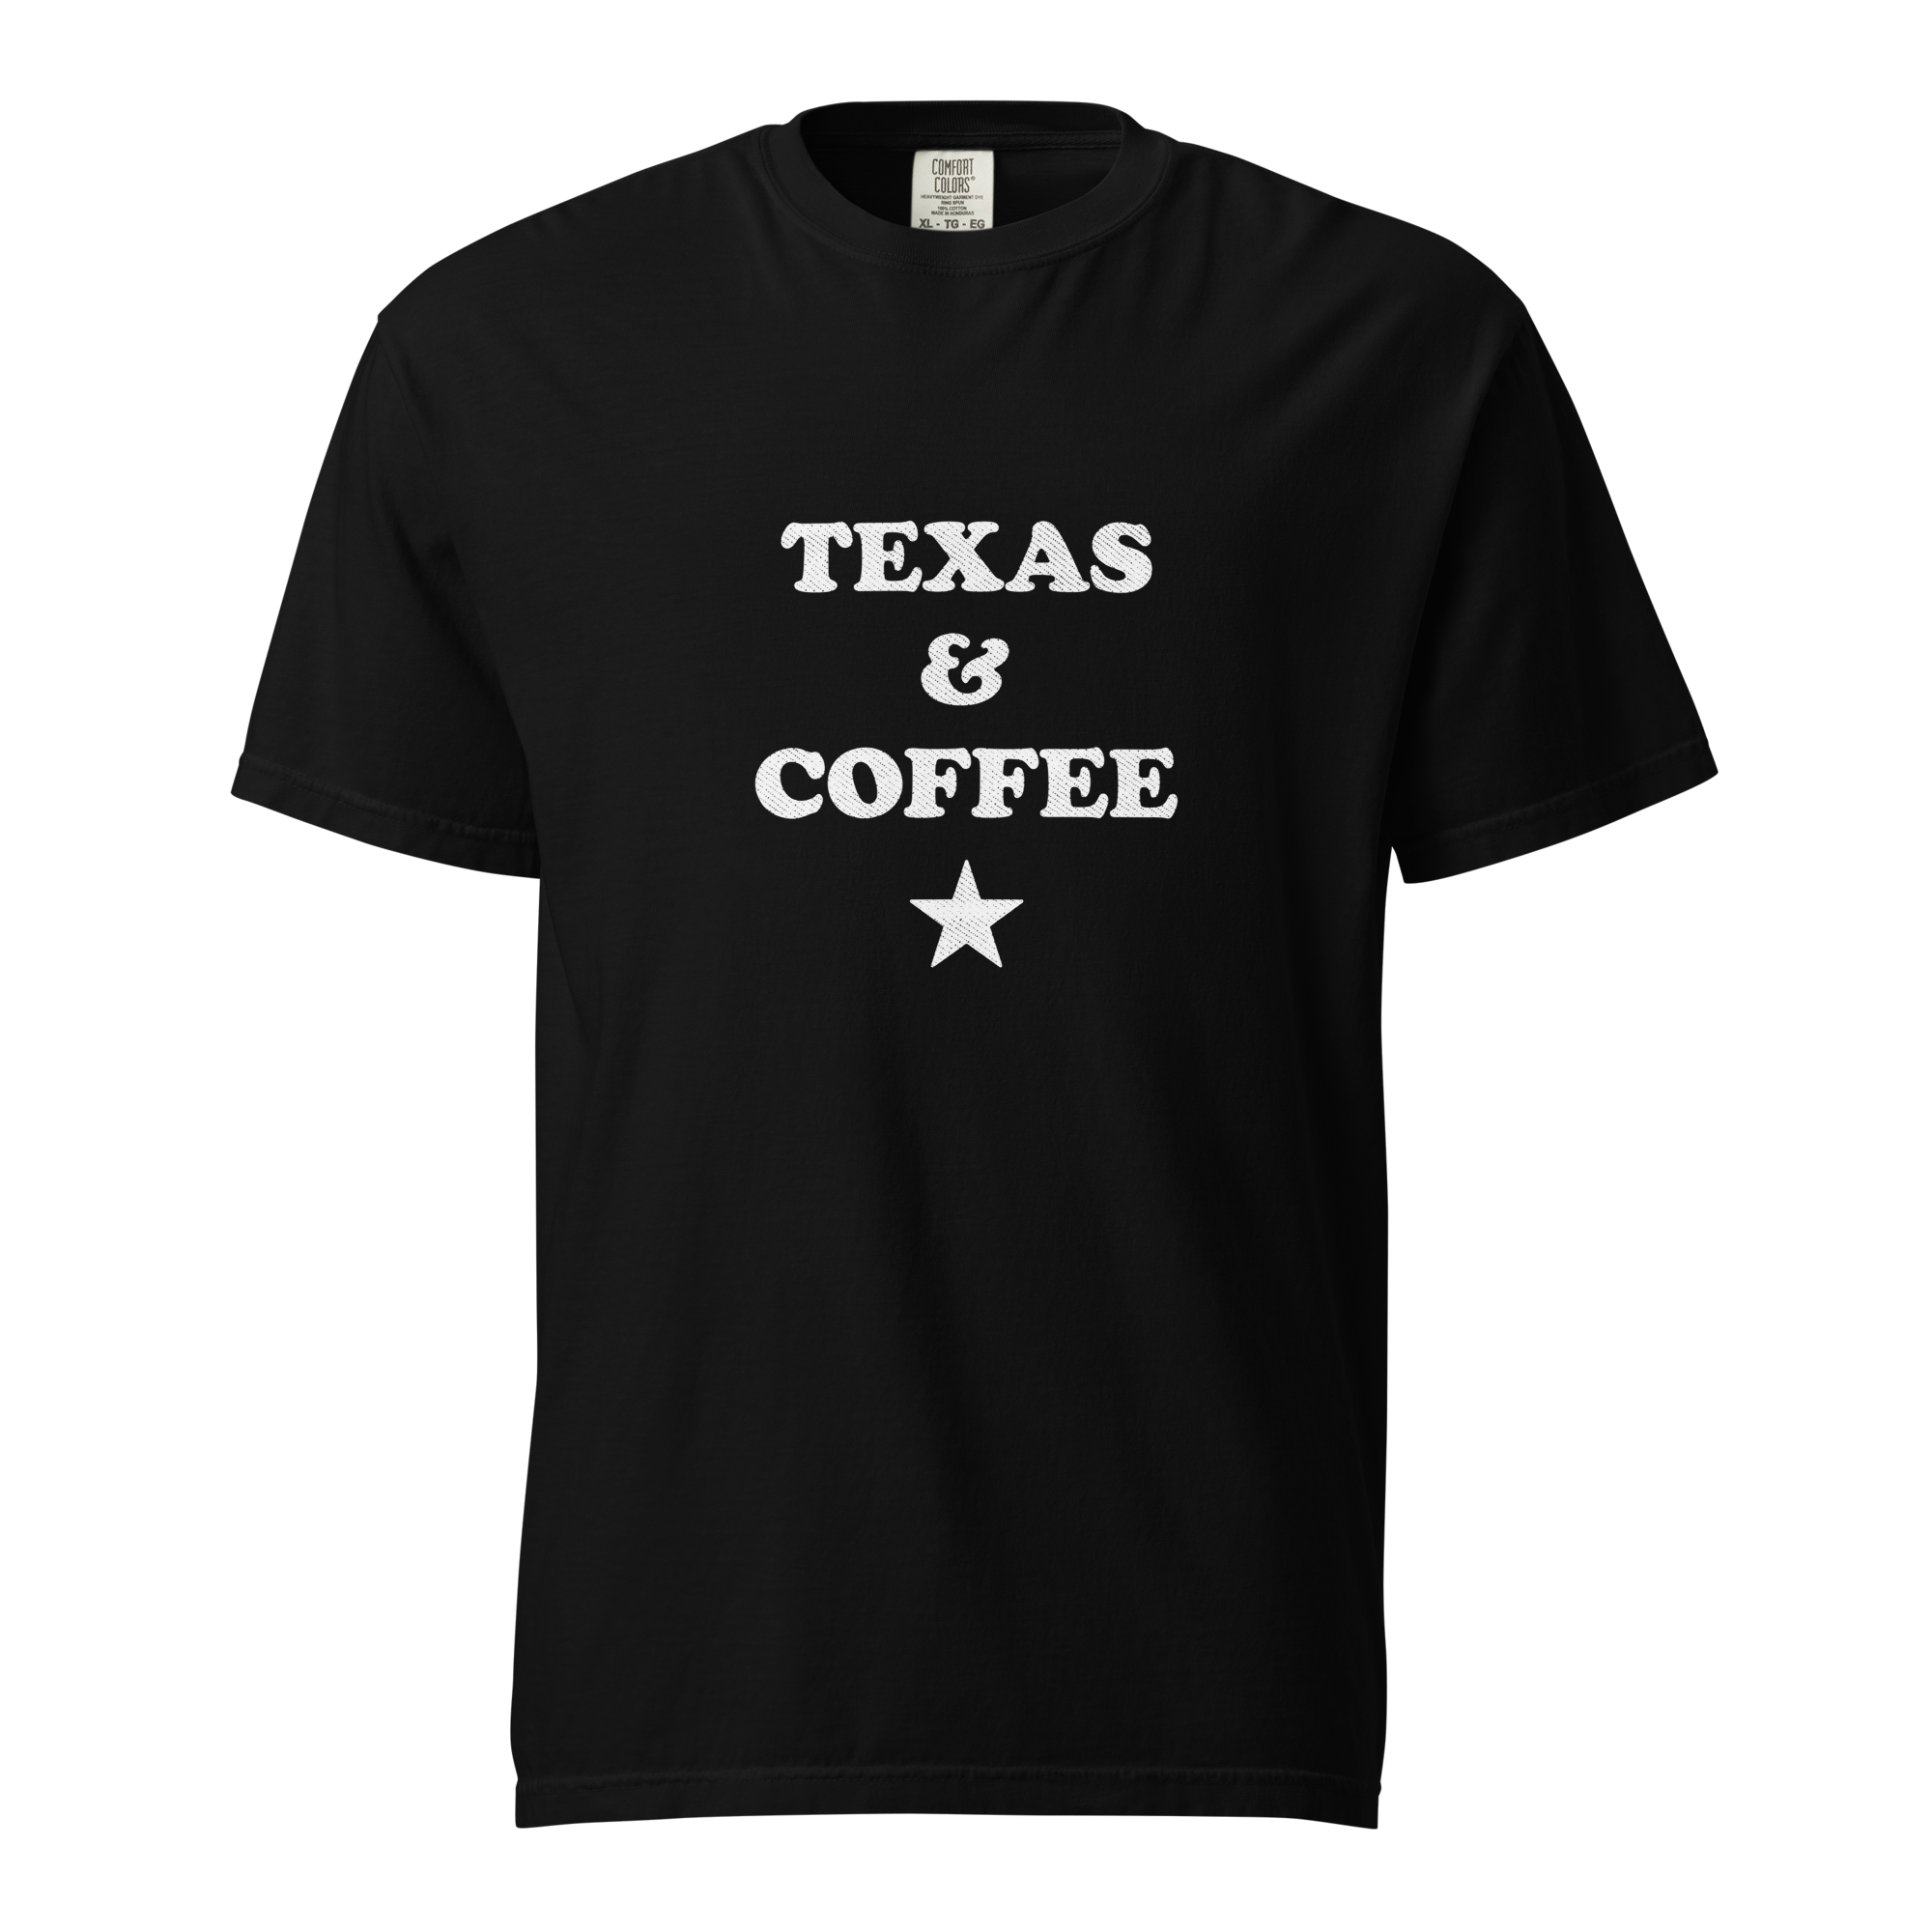 Texas & Coffee T-shirt